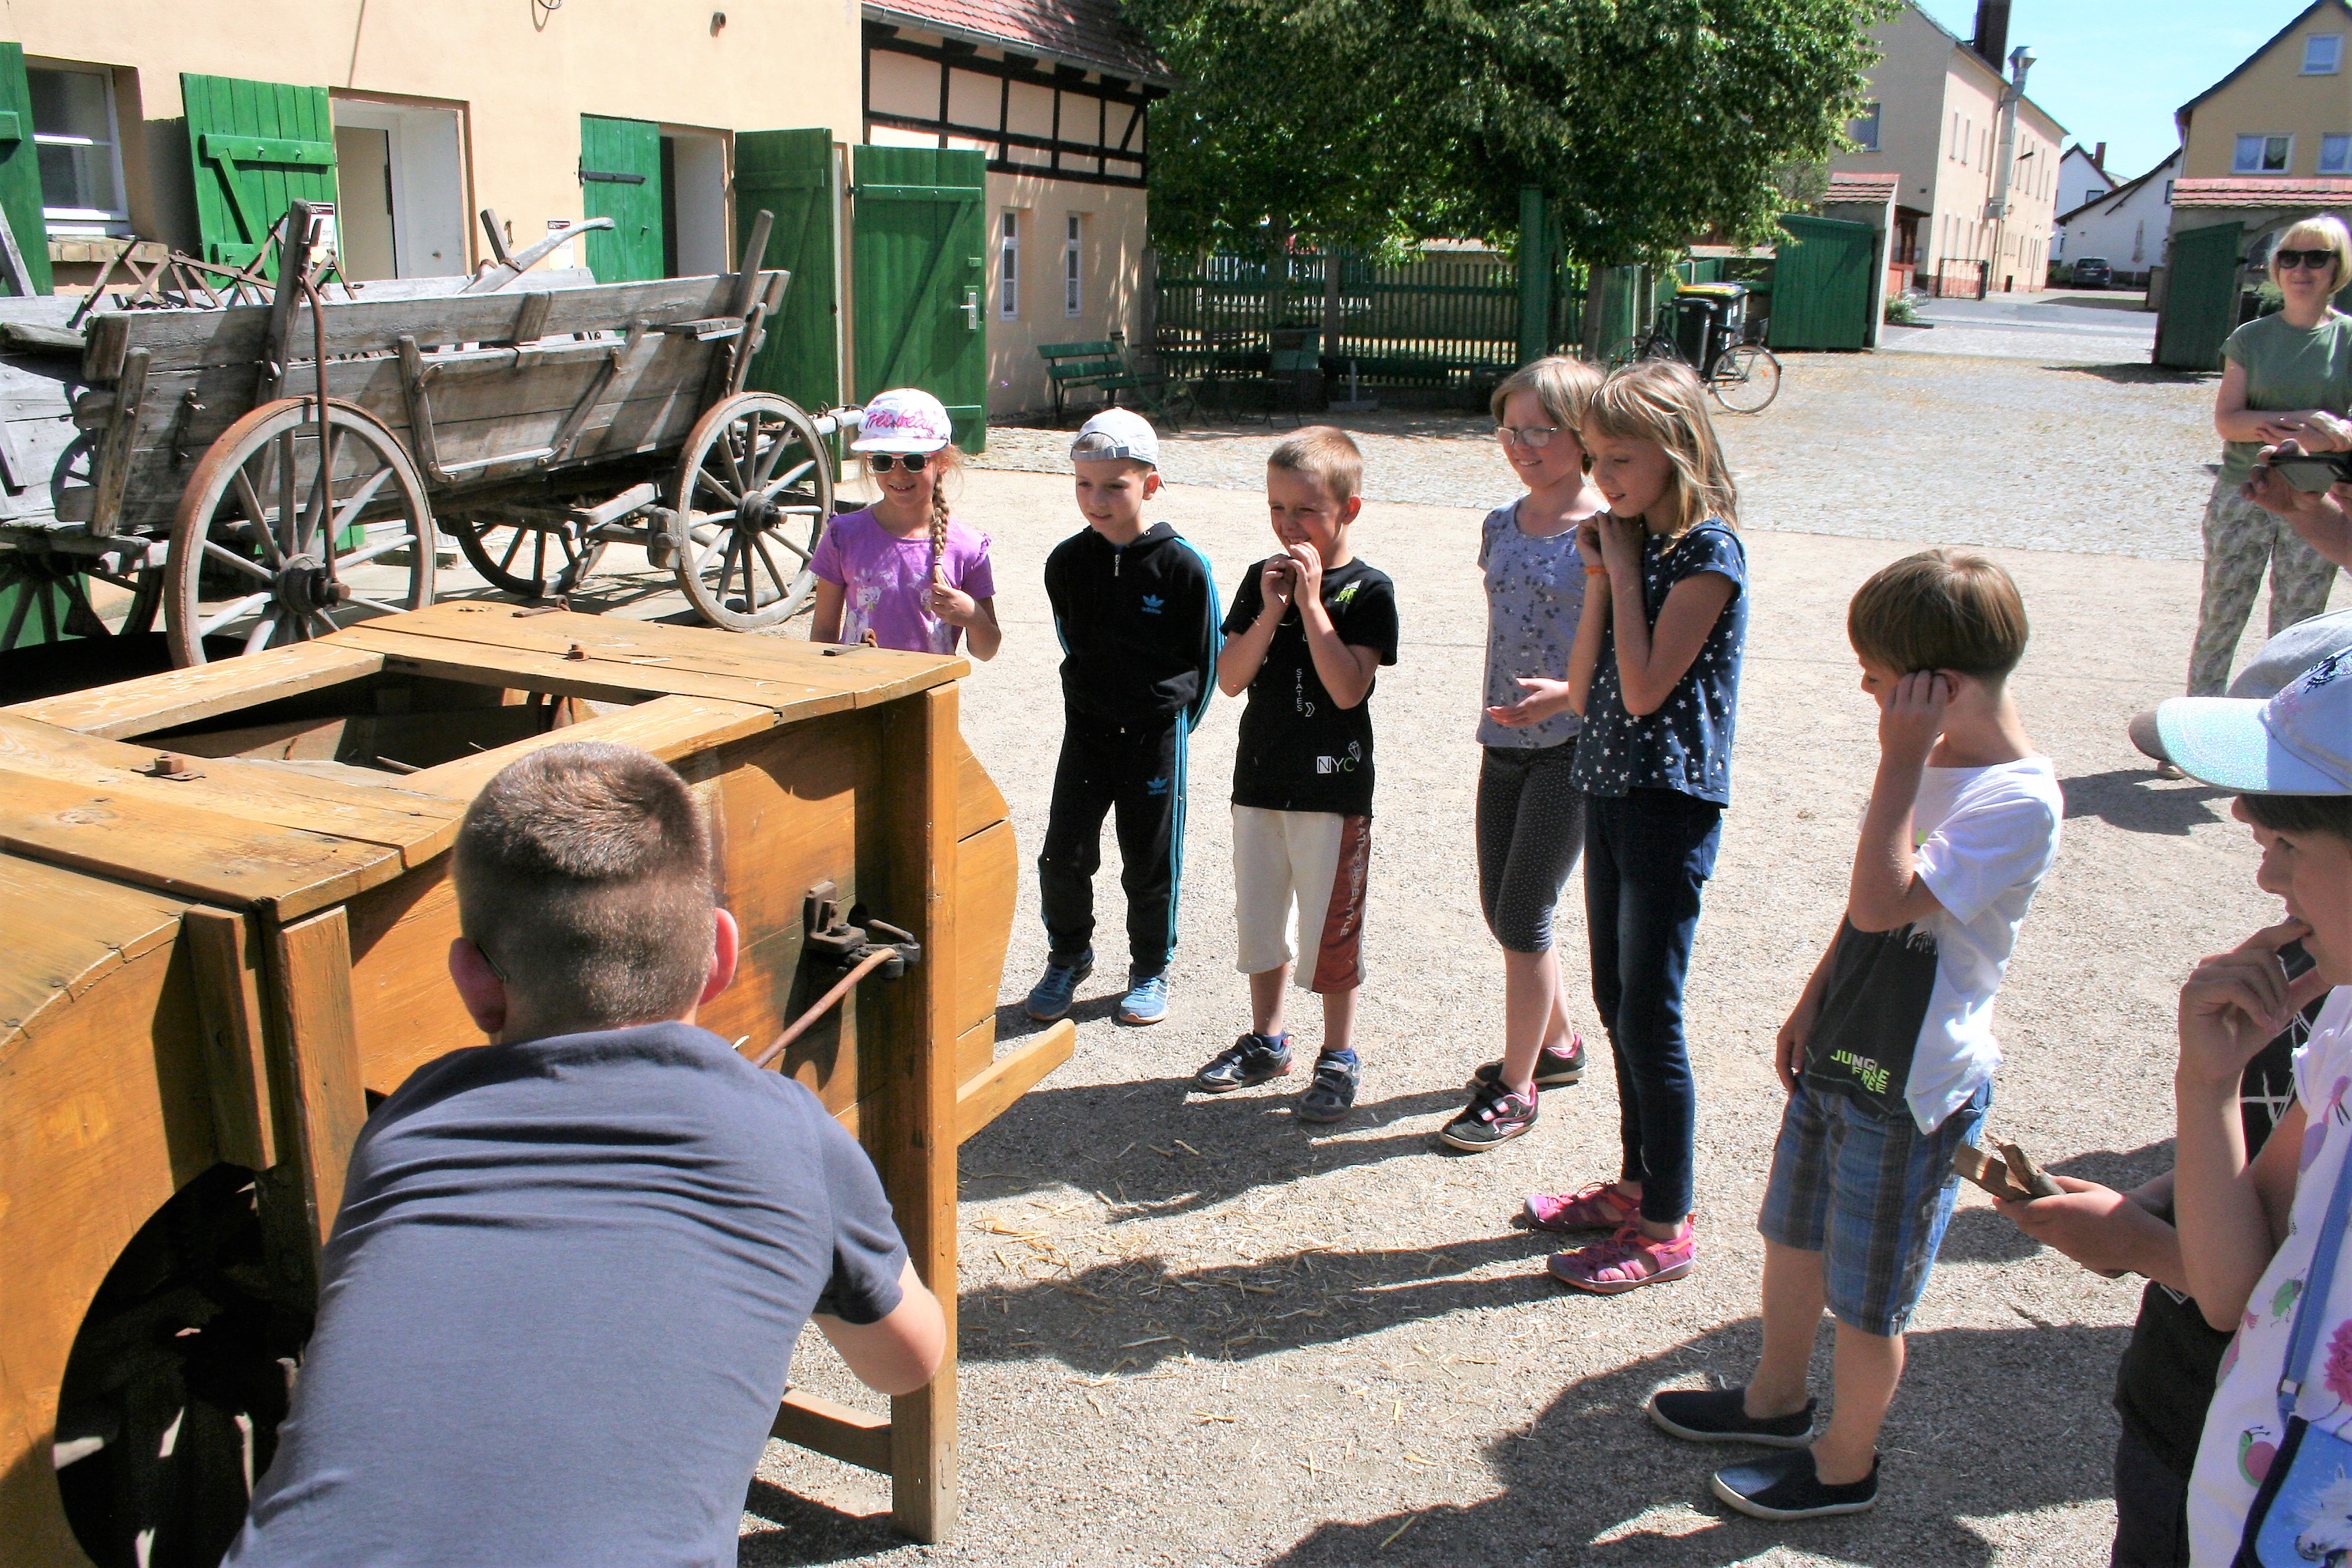 Eine Grundschulgruppe und ihre erwachsene Begleiterin stehen im Außenbereich des Museums, die Kinder inspizieren ein großes hölzernes Gerät namens Windfege.